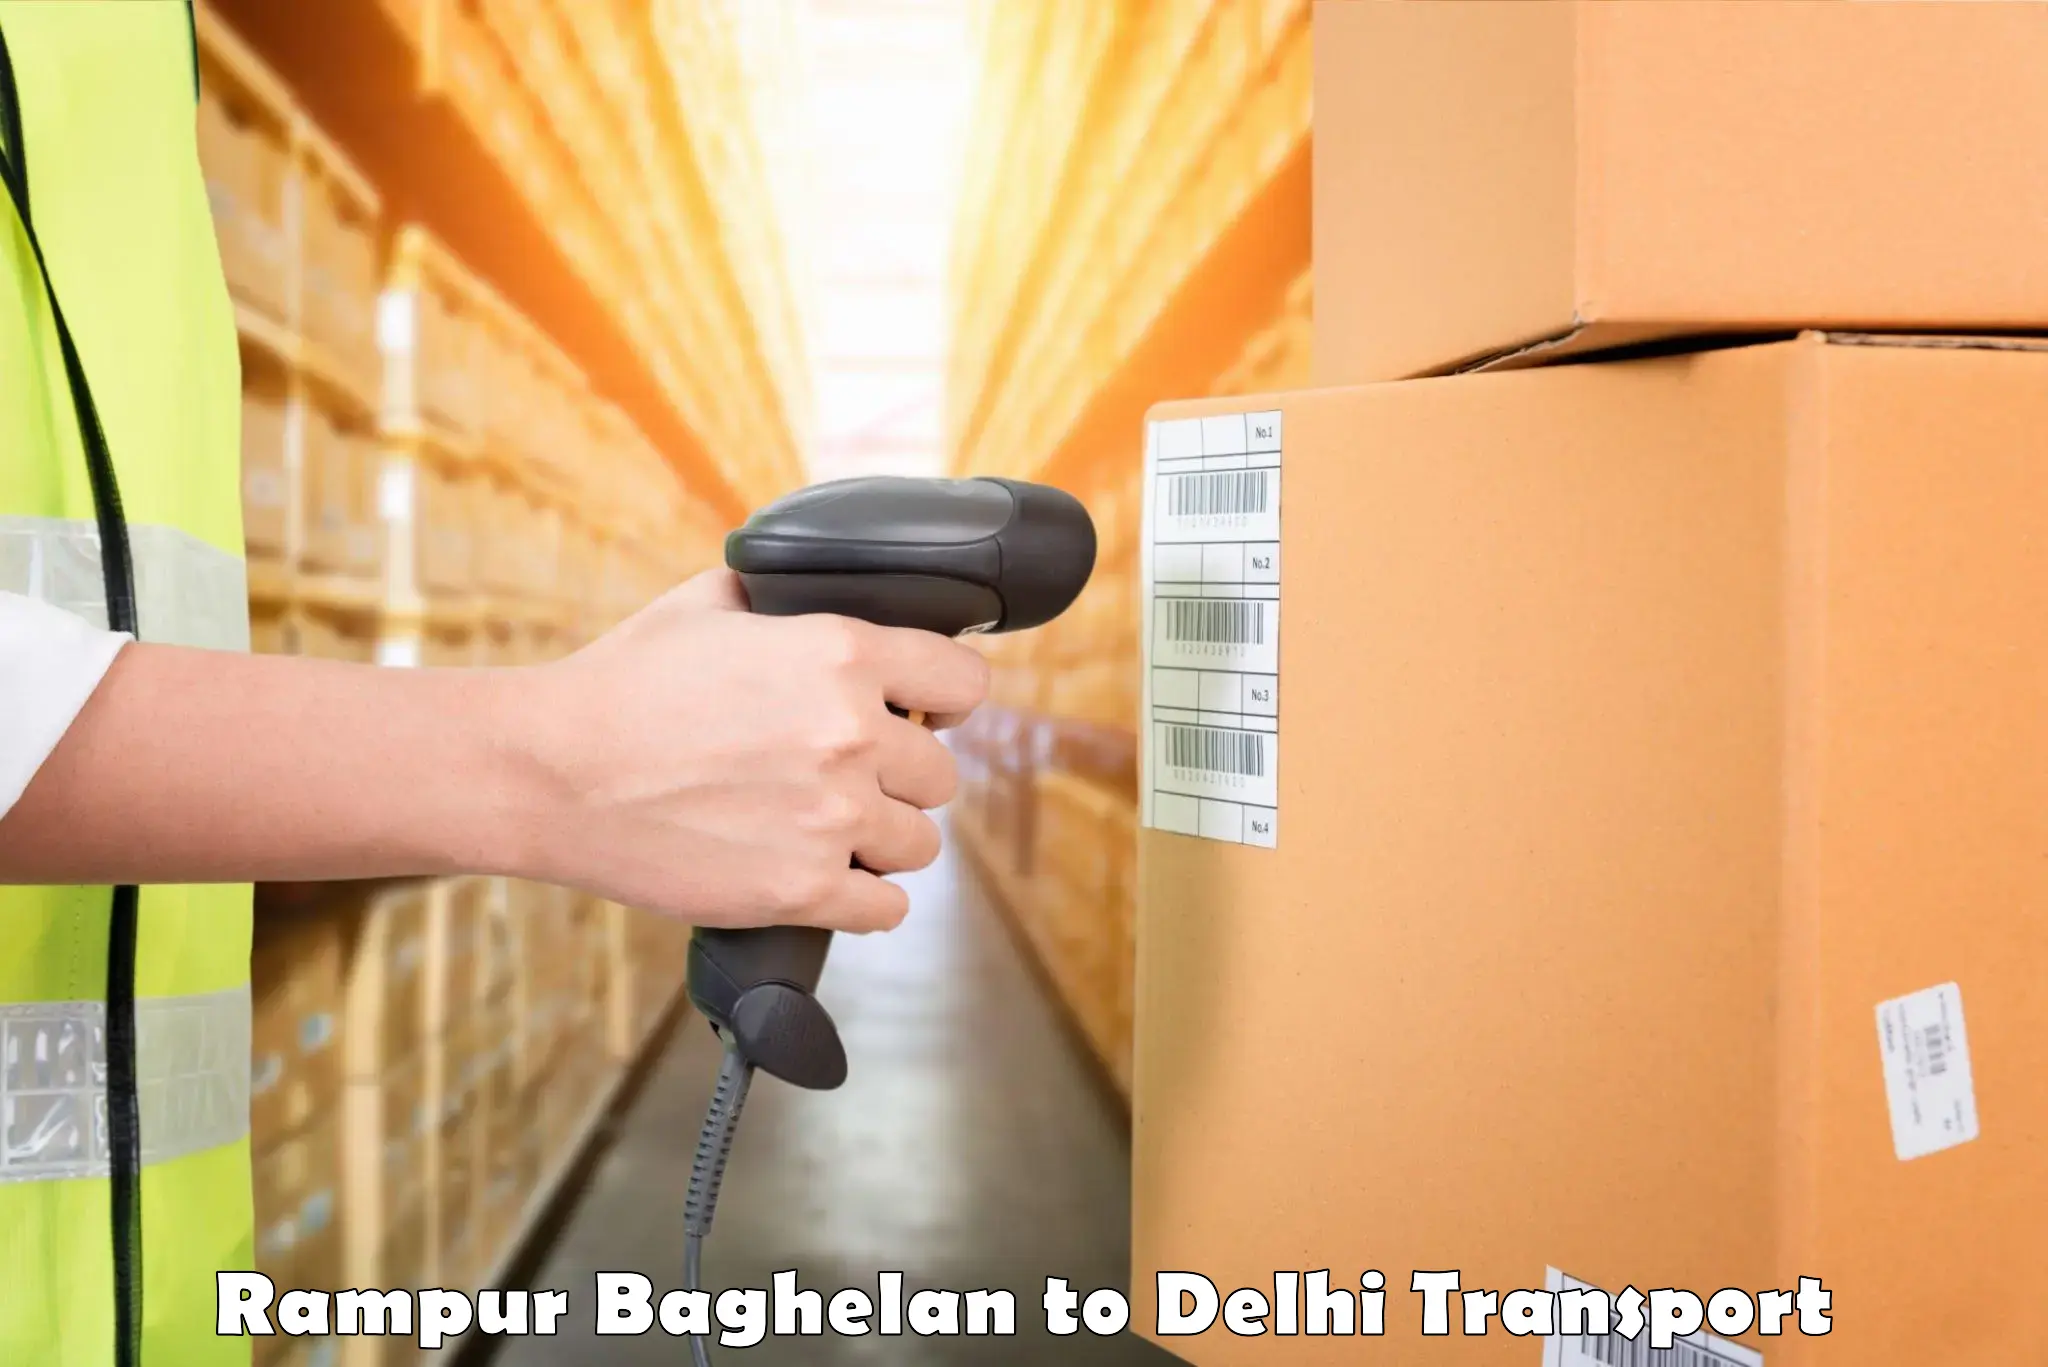 Delivery service Rampur Baghelan to Krishna Nagar